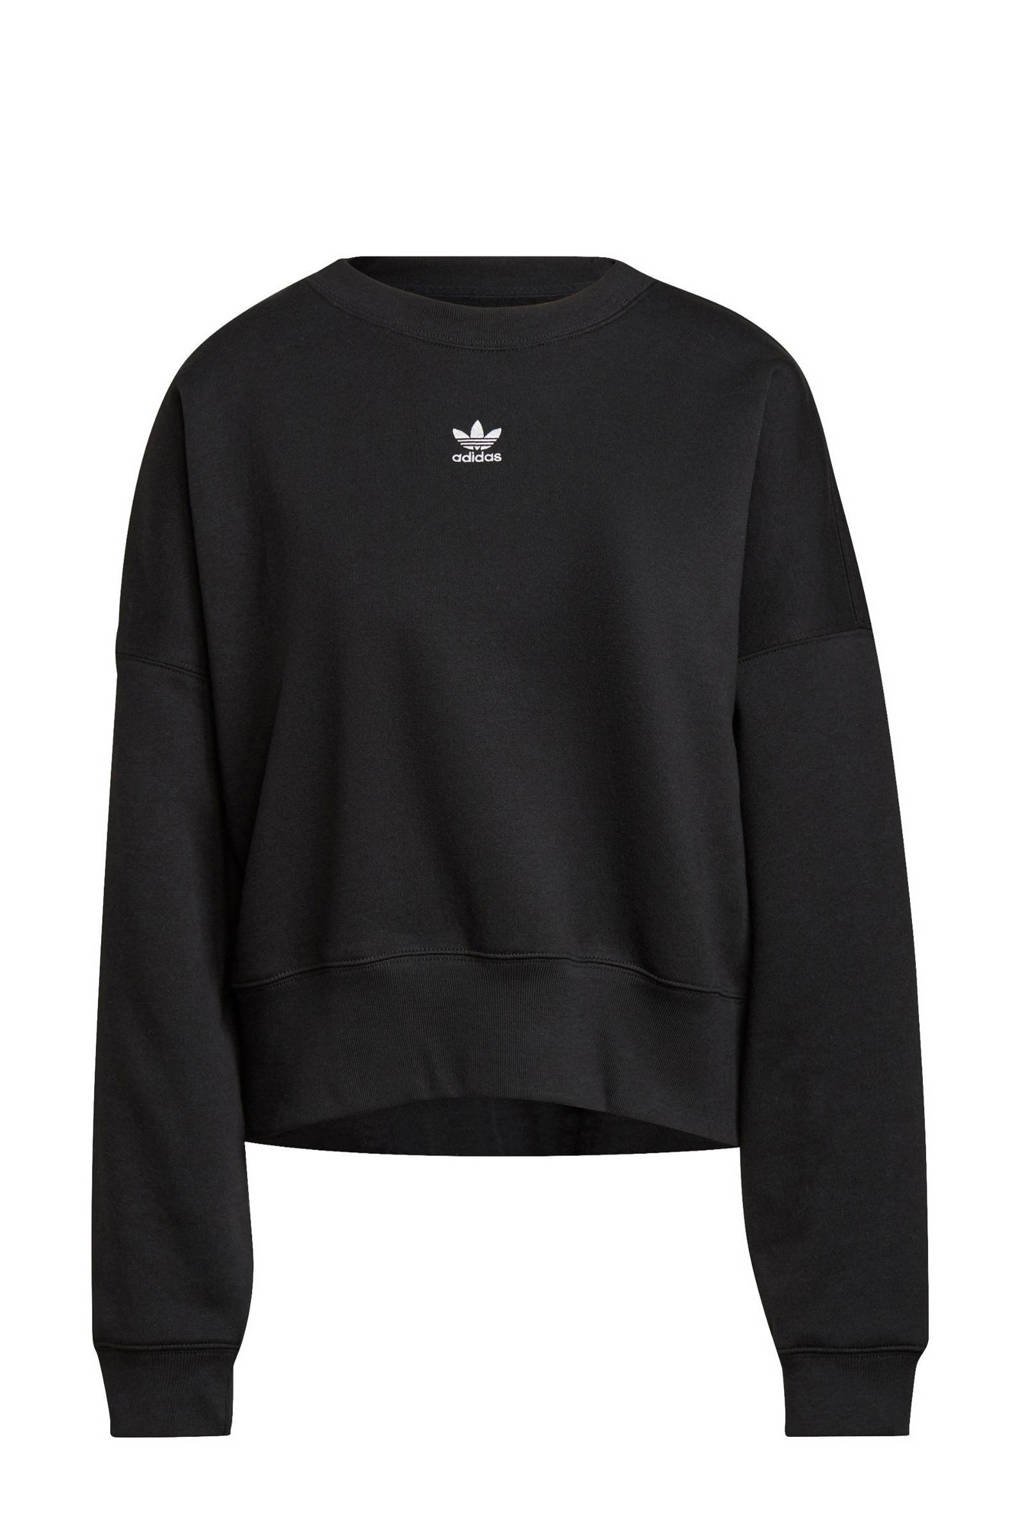 adidas Originals Adicolor fleece sweater zwart, Zwart